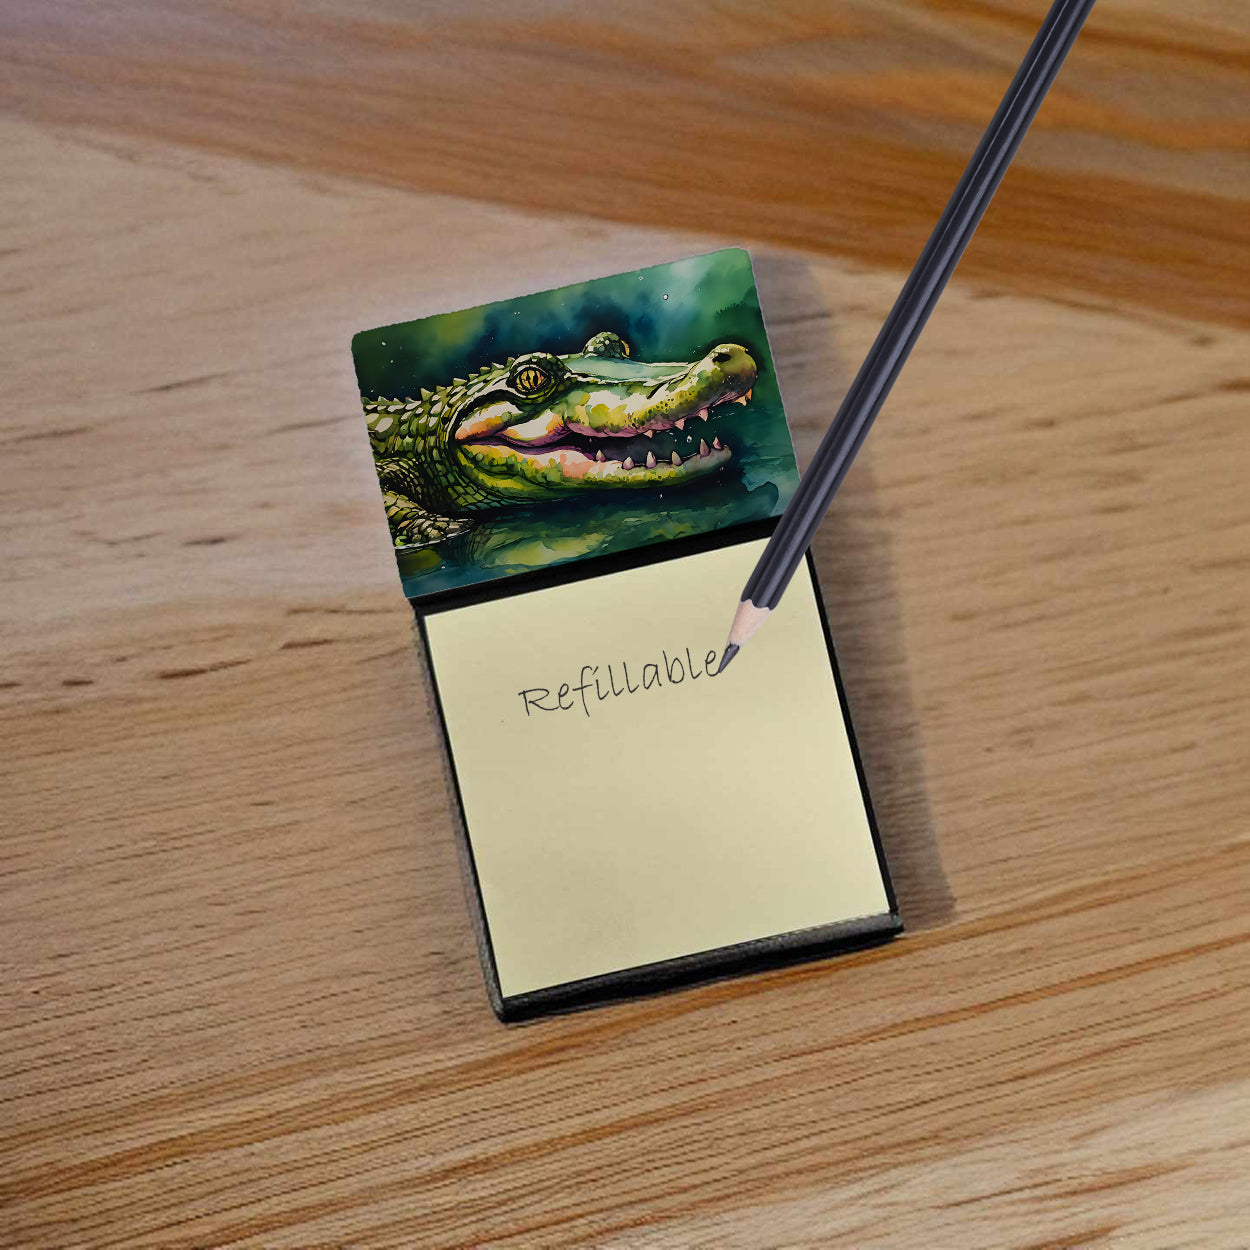 Buy this Alligator Sticky Note Holder